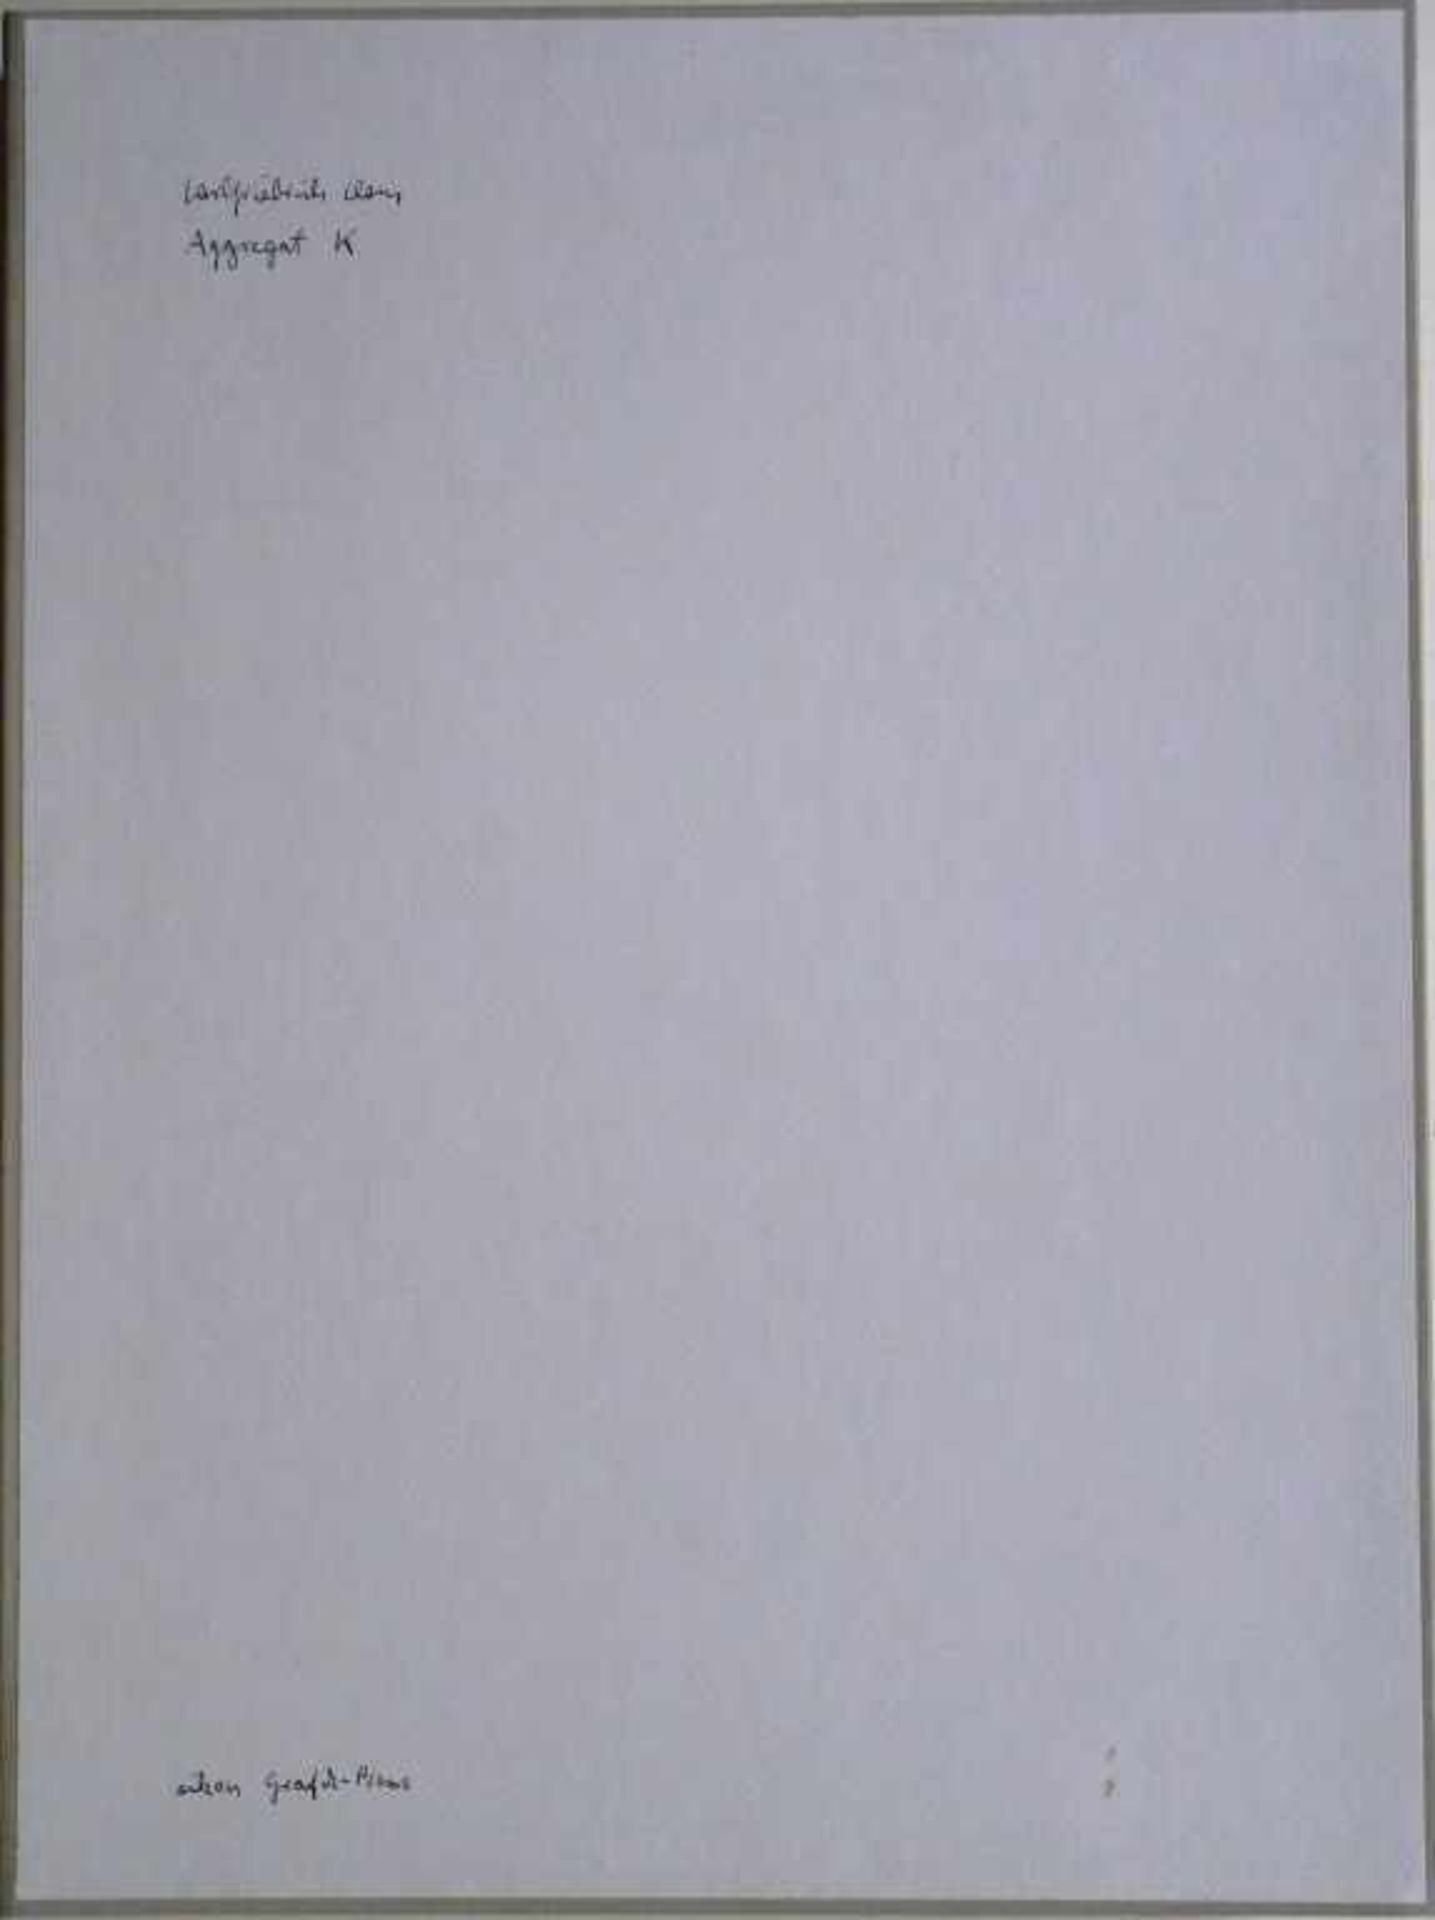 CLAUS, CARLFRIEDRICH: "Aggregat K", 1986/88Kassette mit 80 Seiten in sieben Lagen, geschrieben mit